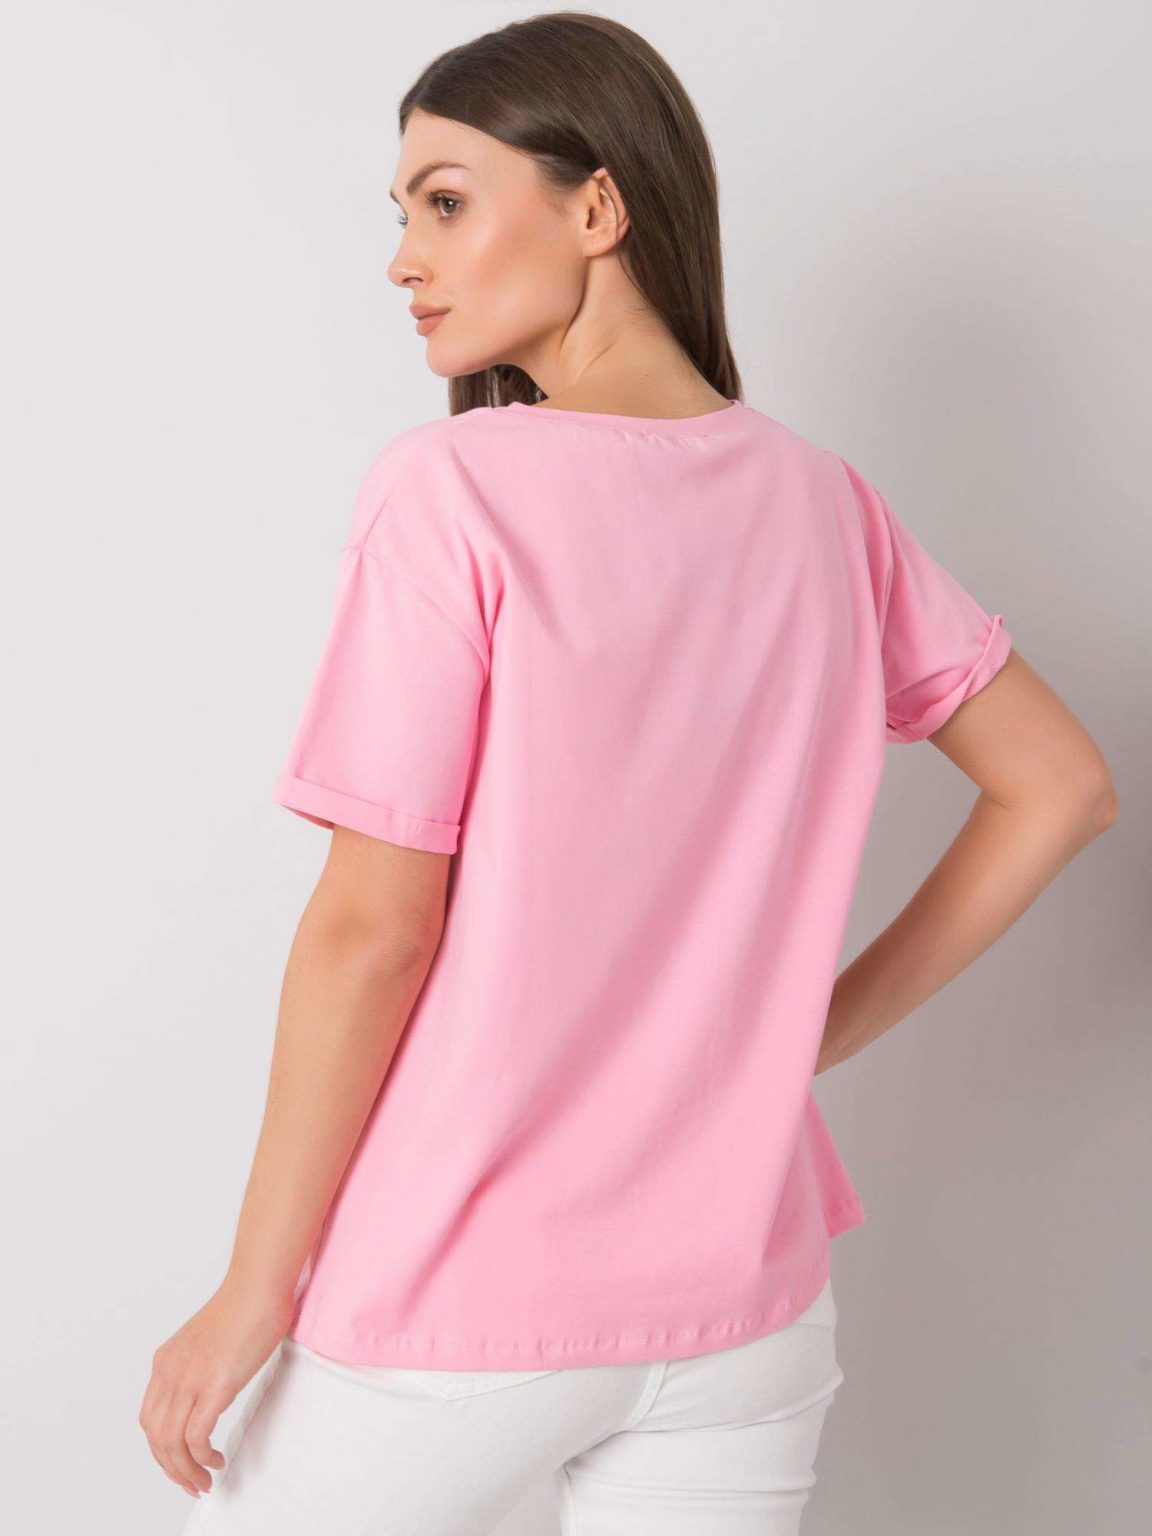 Różowy t-shirt z nadrukiem Aosta